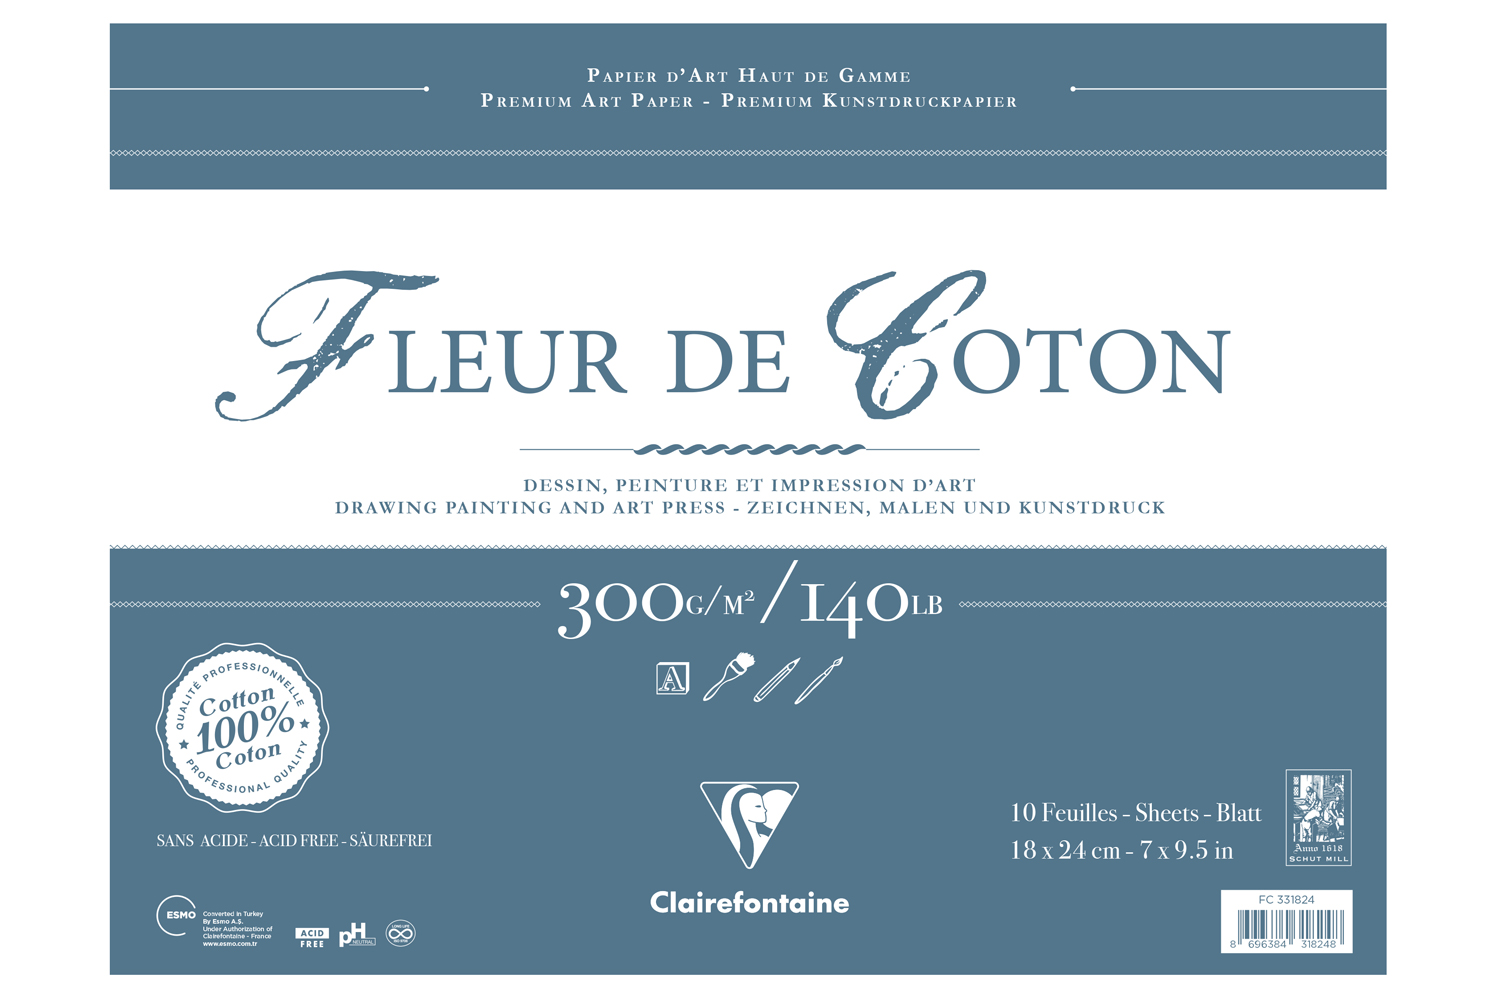 Clairfontaine, Fleur de Coton Uzun Kenarı Yapışkanlı - Yeni (10 yaprak, 18x24 cm)